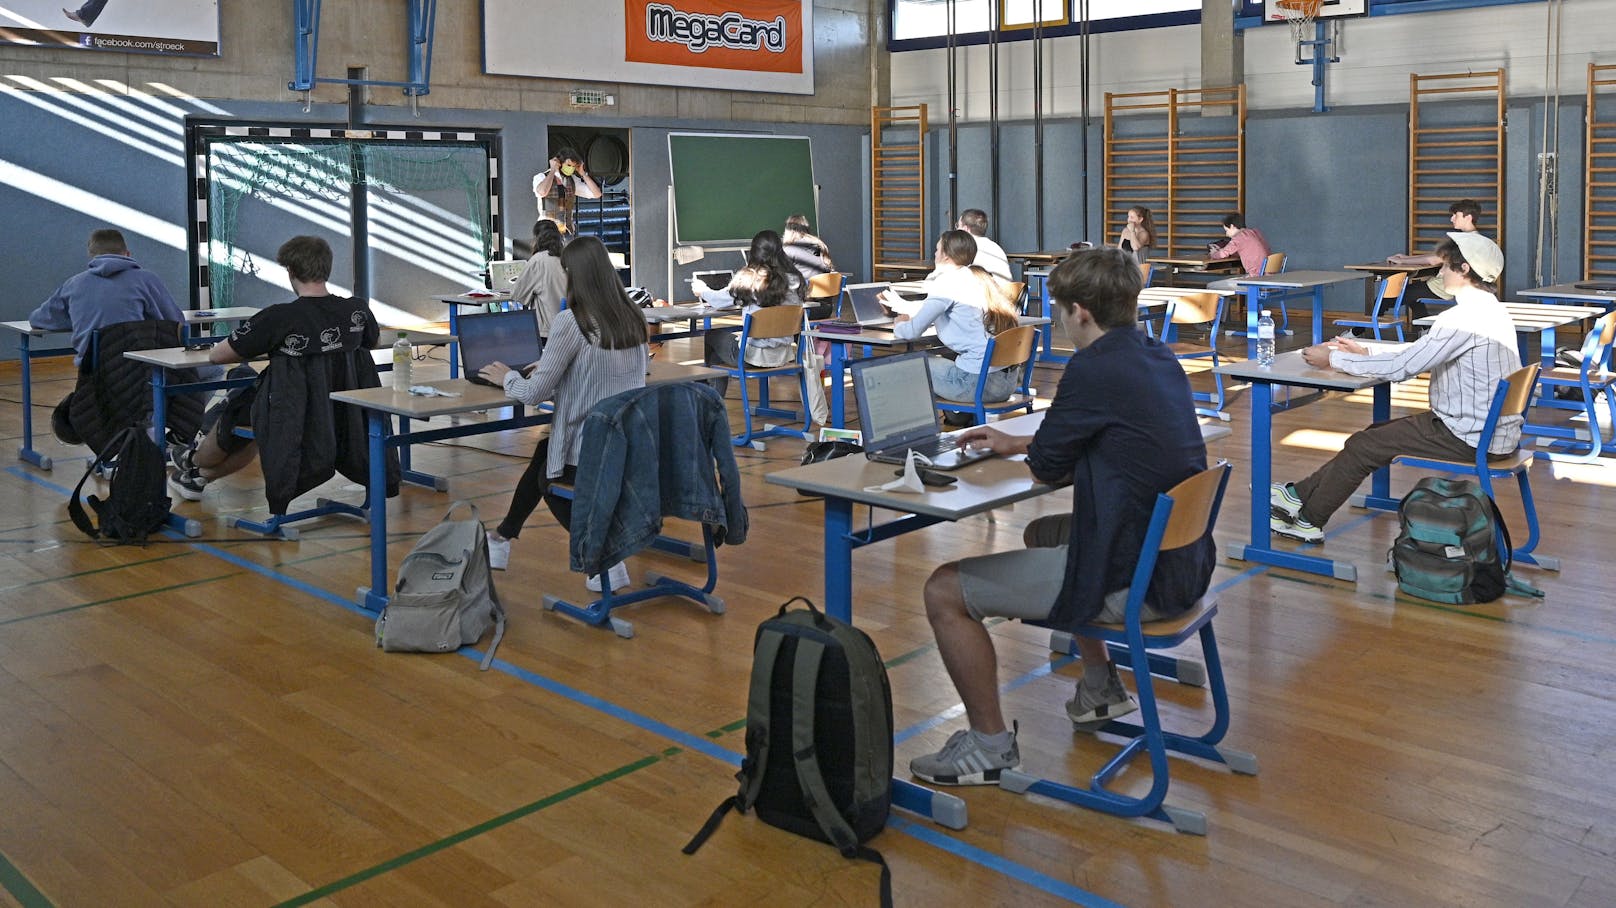 Unterricht in einem Turnsaal (Archivfoto): Die Schulen dürfen im Schichtbetrieb nach dem harten Lockdown wieder starten.